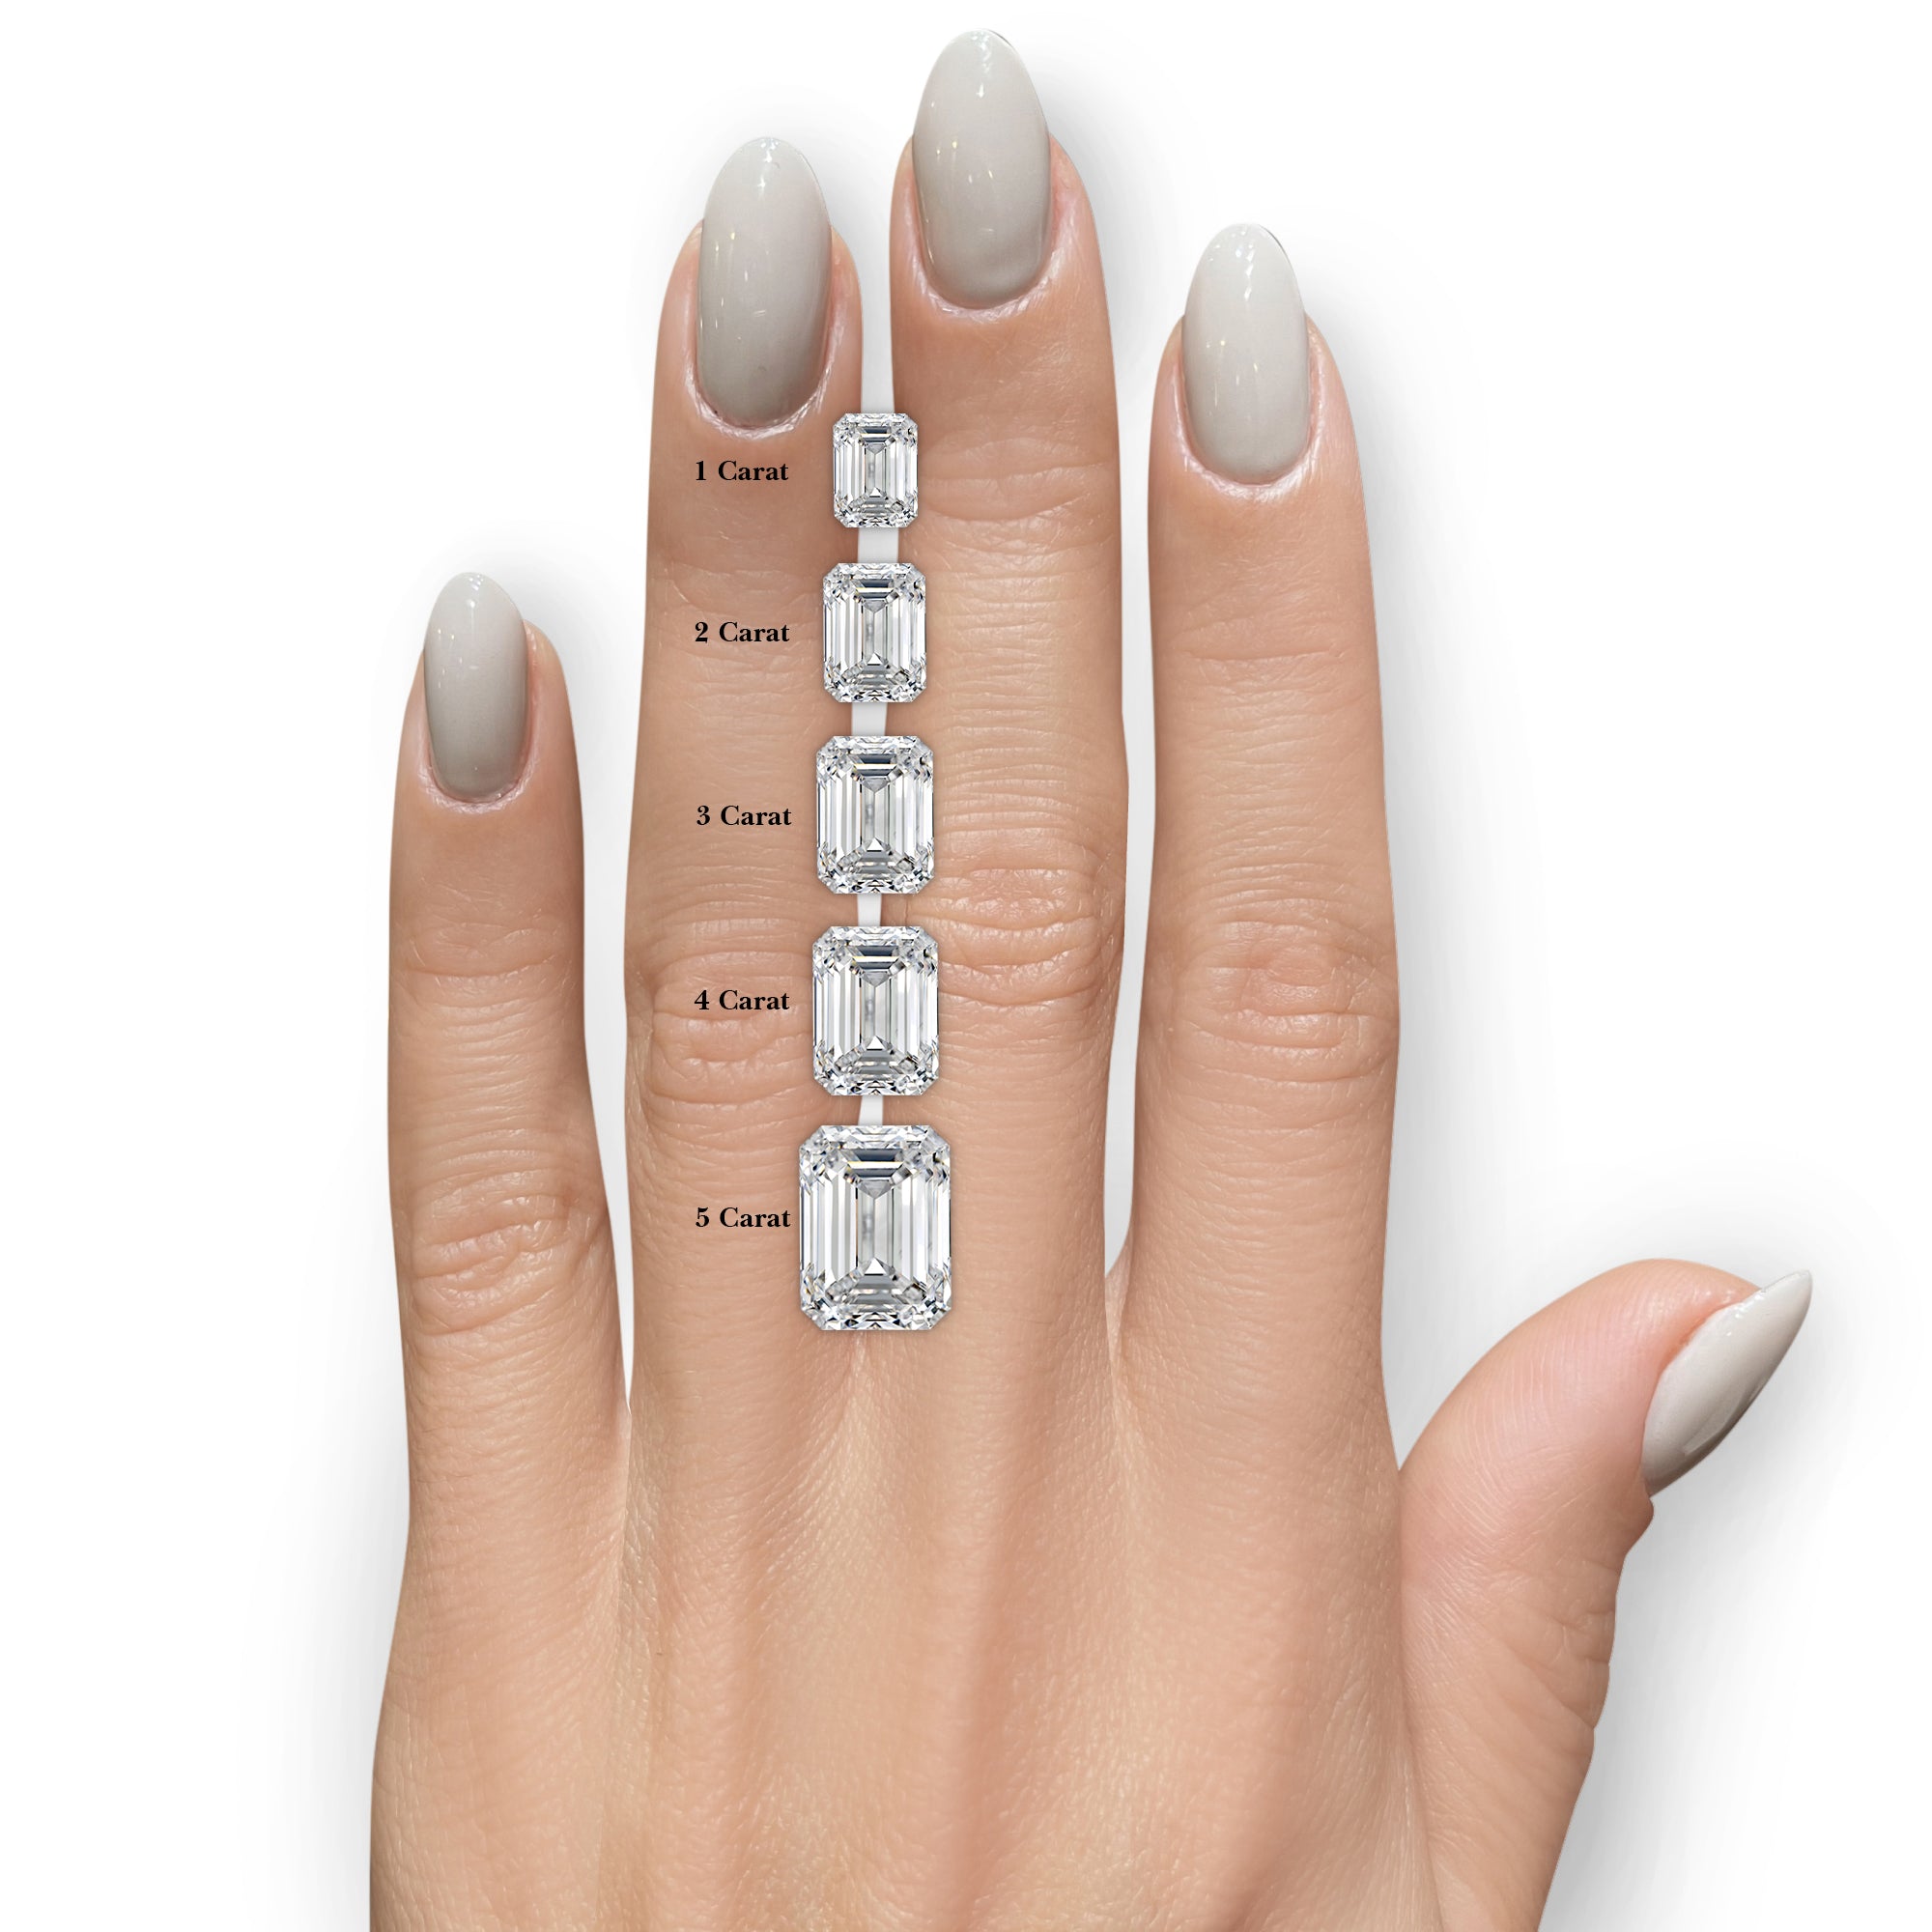 Claire Moissanite & Diamonds Ring -Platinum